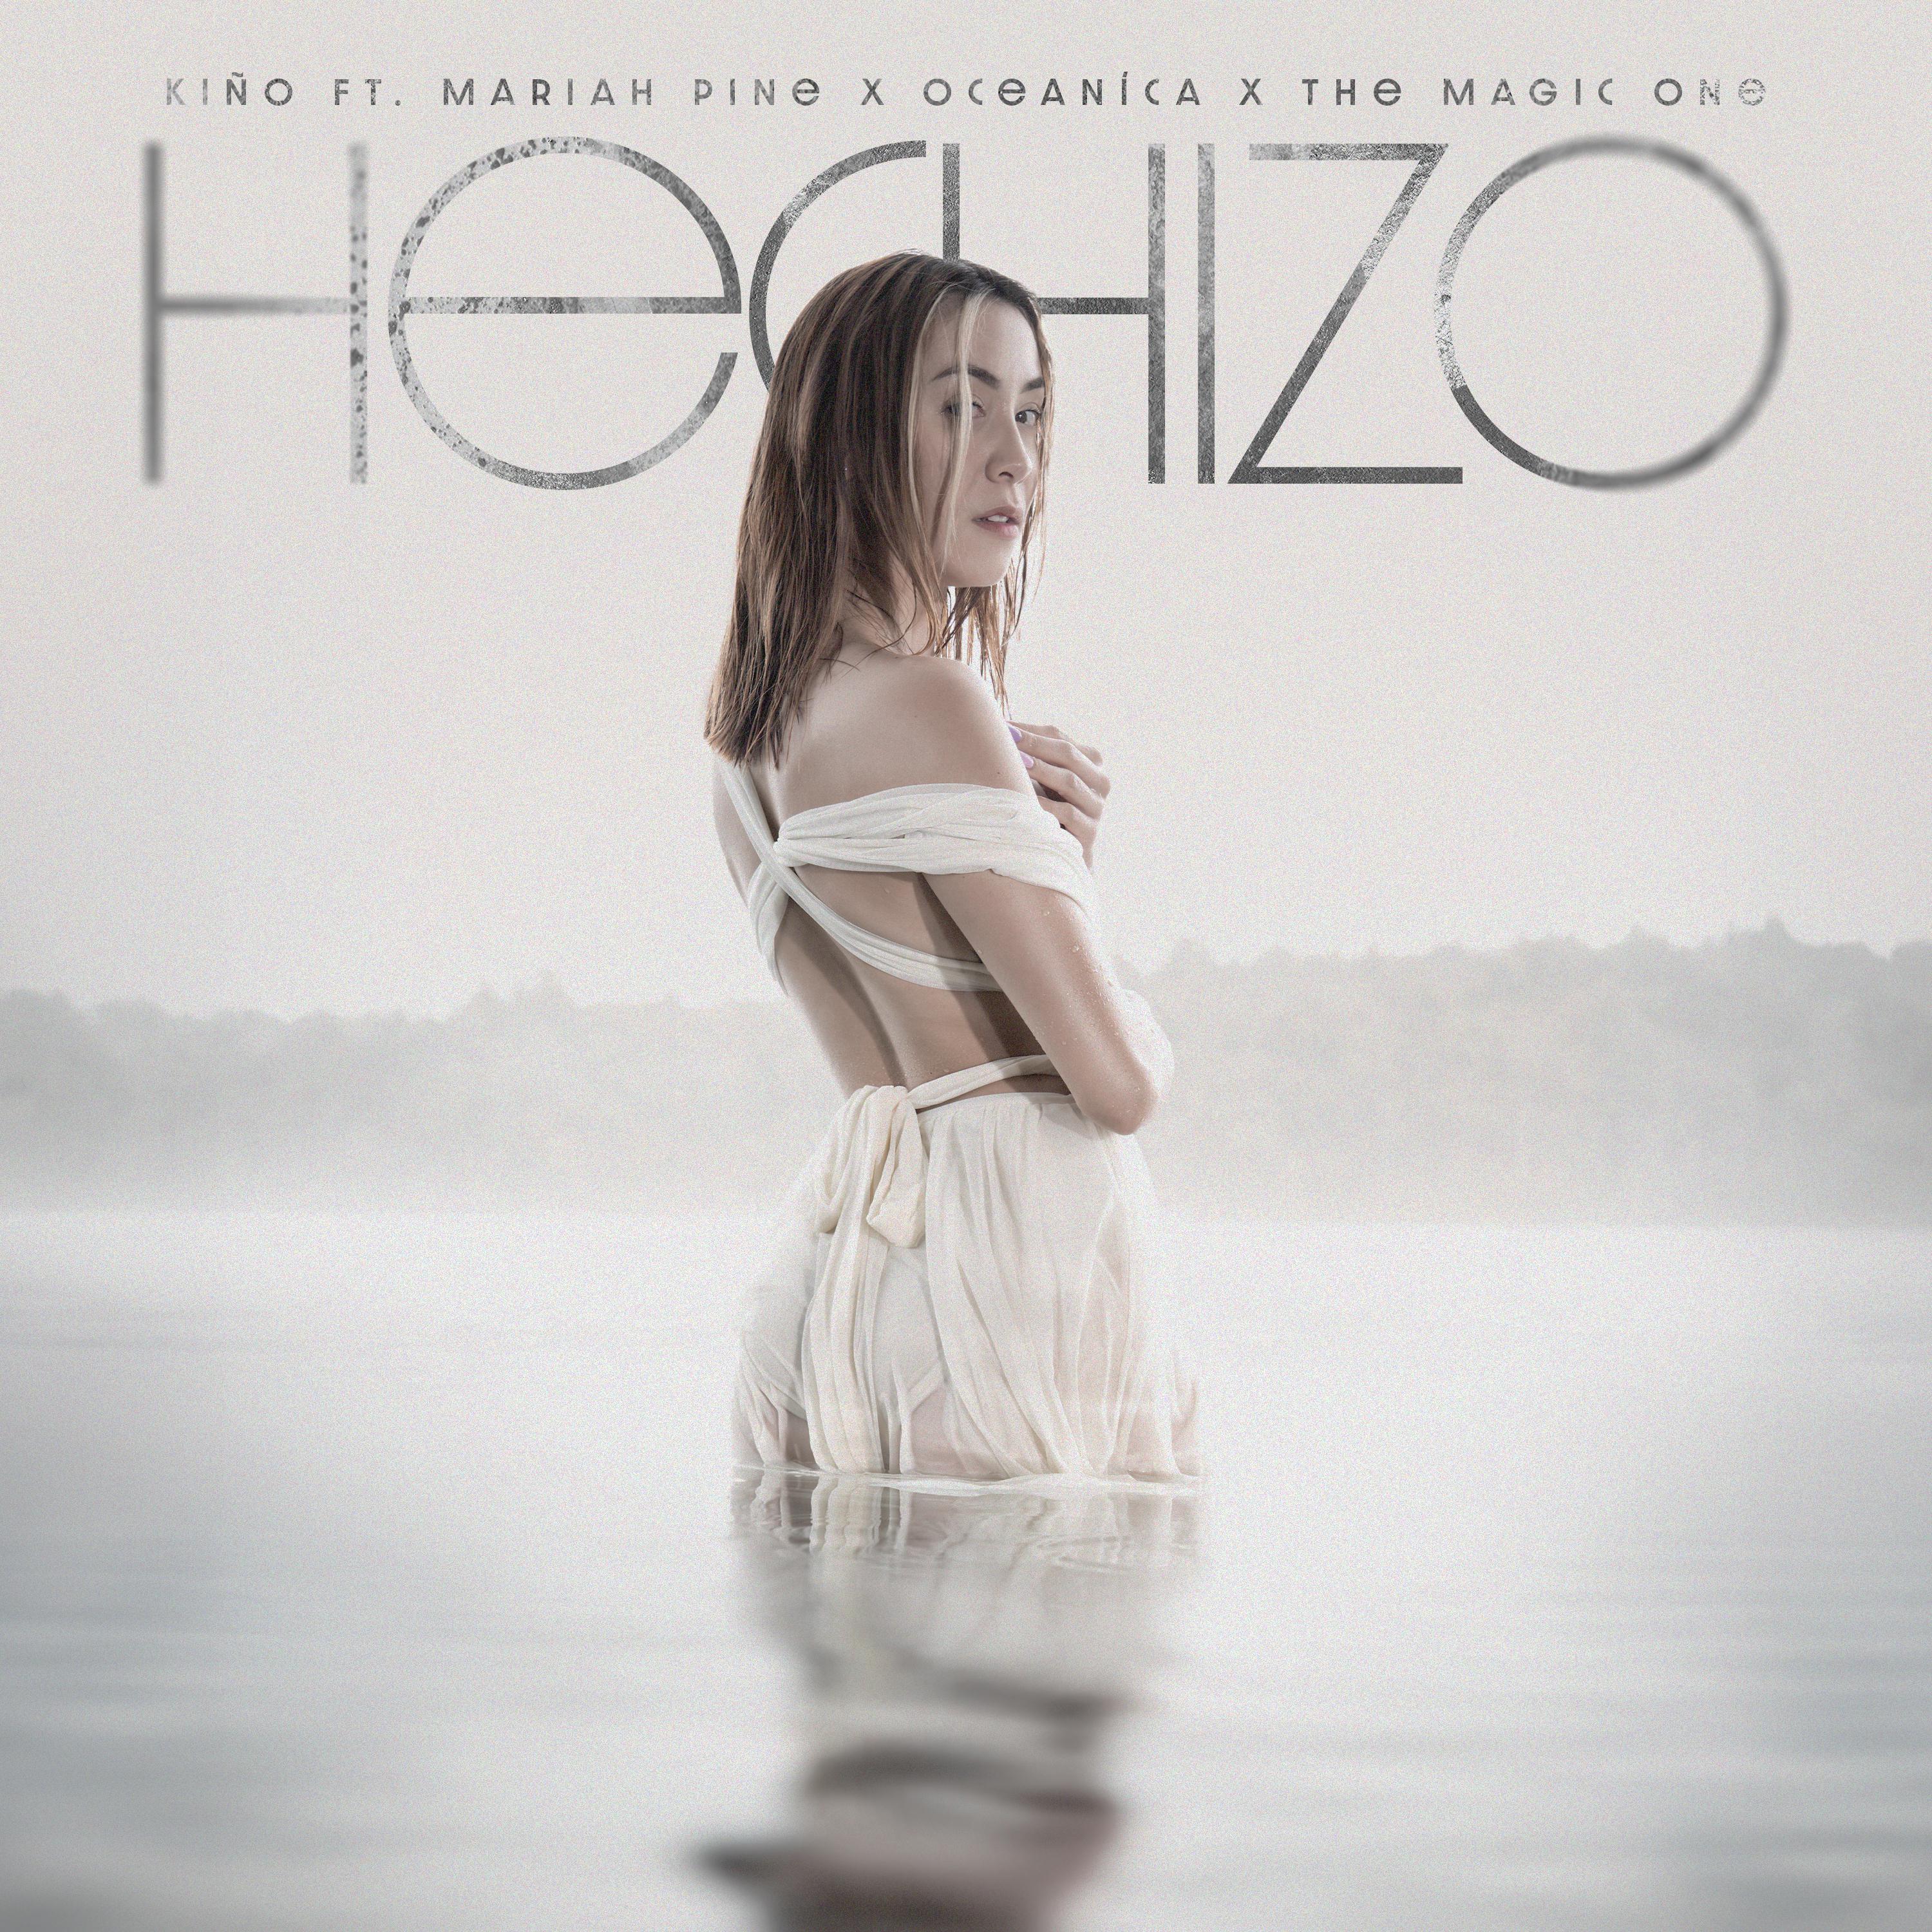 Постер альбома Hechizo